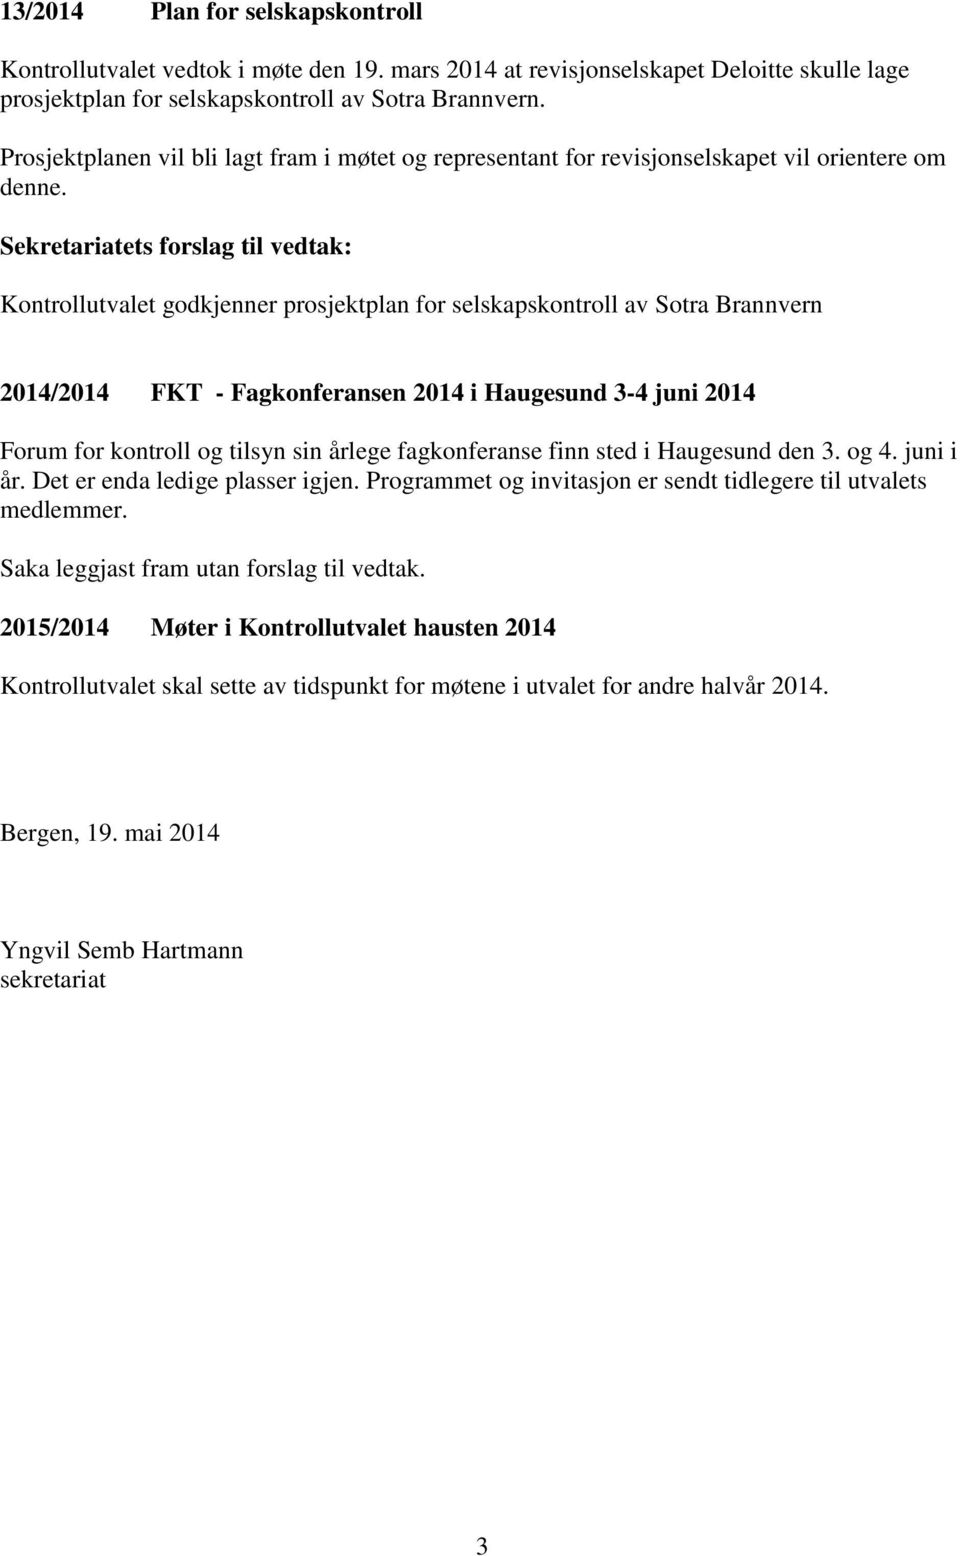 Sekretariatets forslag til vedtak: Kontrollutvalet godkjenner prosjektplan for selskapskontroll av Sotra Brannvern 2014/2014 FKT - Fagkonferansen 2014 i Haugesund 3-4 juni 2014 Forum for kontroll og